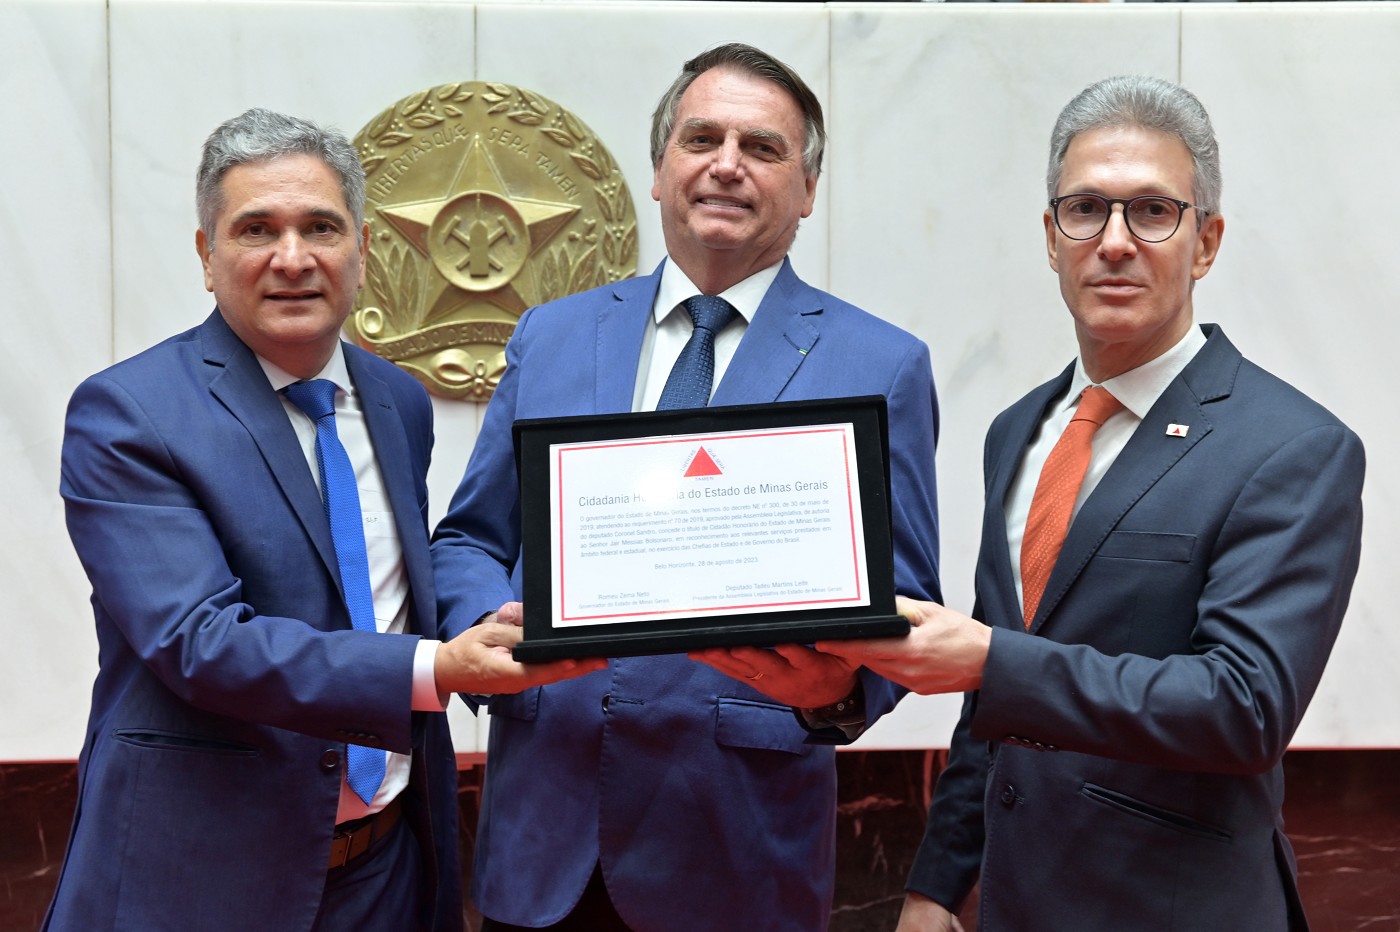 Reunião Especial - entrega do título de Cidadão Honorário do Estado de Minas Gerais ao Sr. Jair Messias Bolsonaro